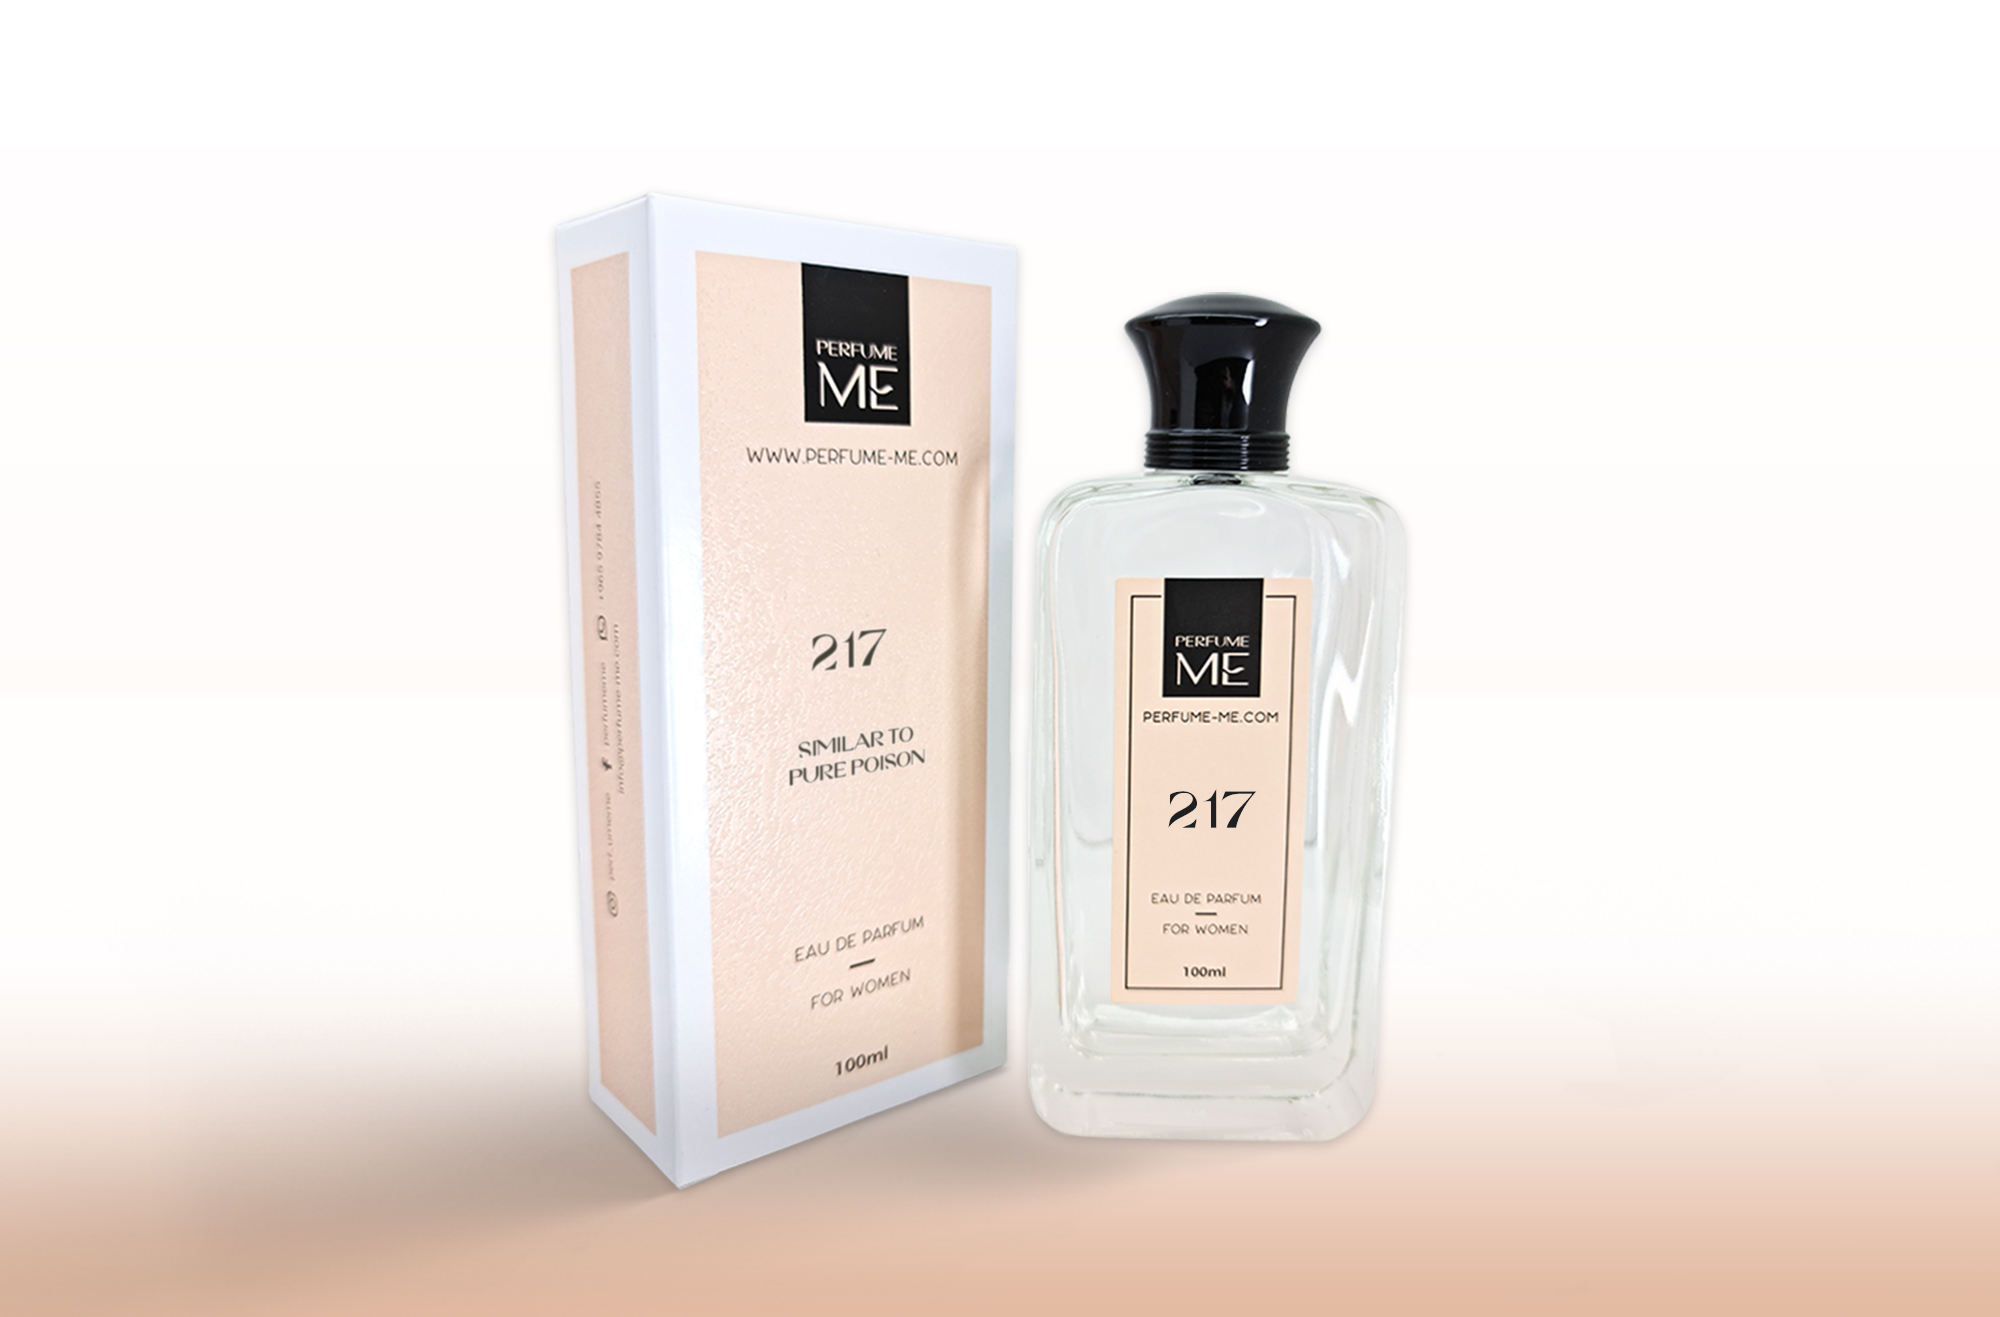 Christian Dior PURE POISON eau de parfum - Fragrance Vault Lake Tahoe – F  Vault